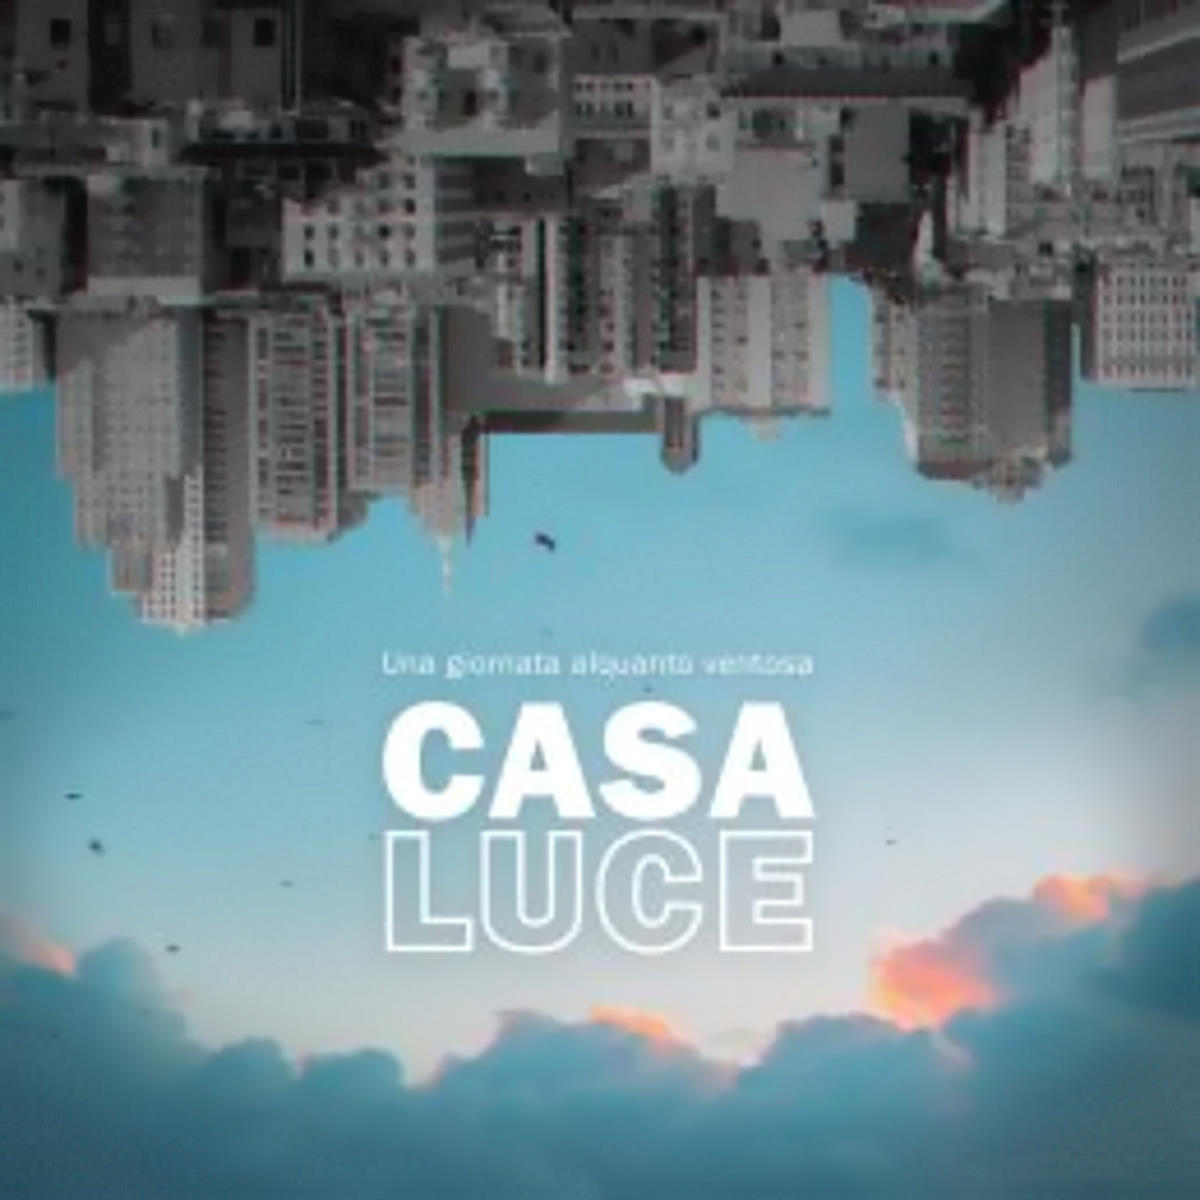 CASALUCE, “Una giornata alquanto ventosa” è il nuovo singolo del cantautore salentino dalle sonorità indie-rock